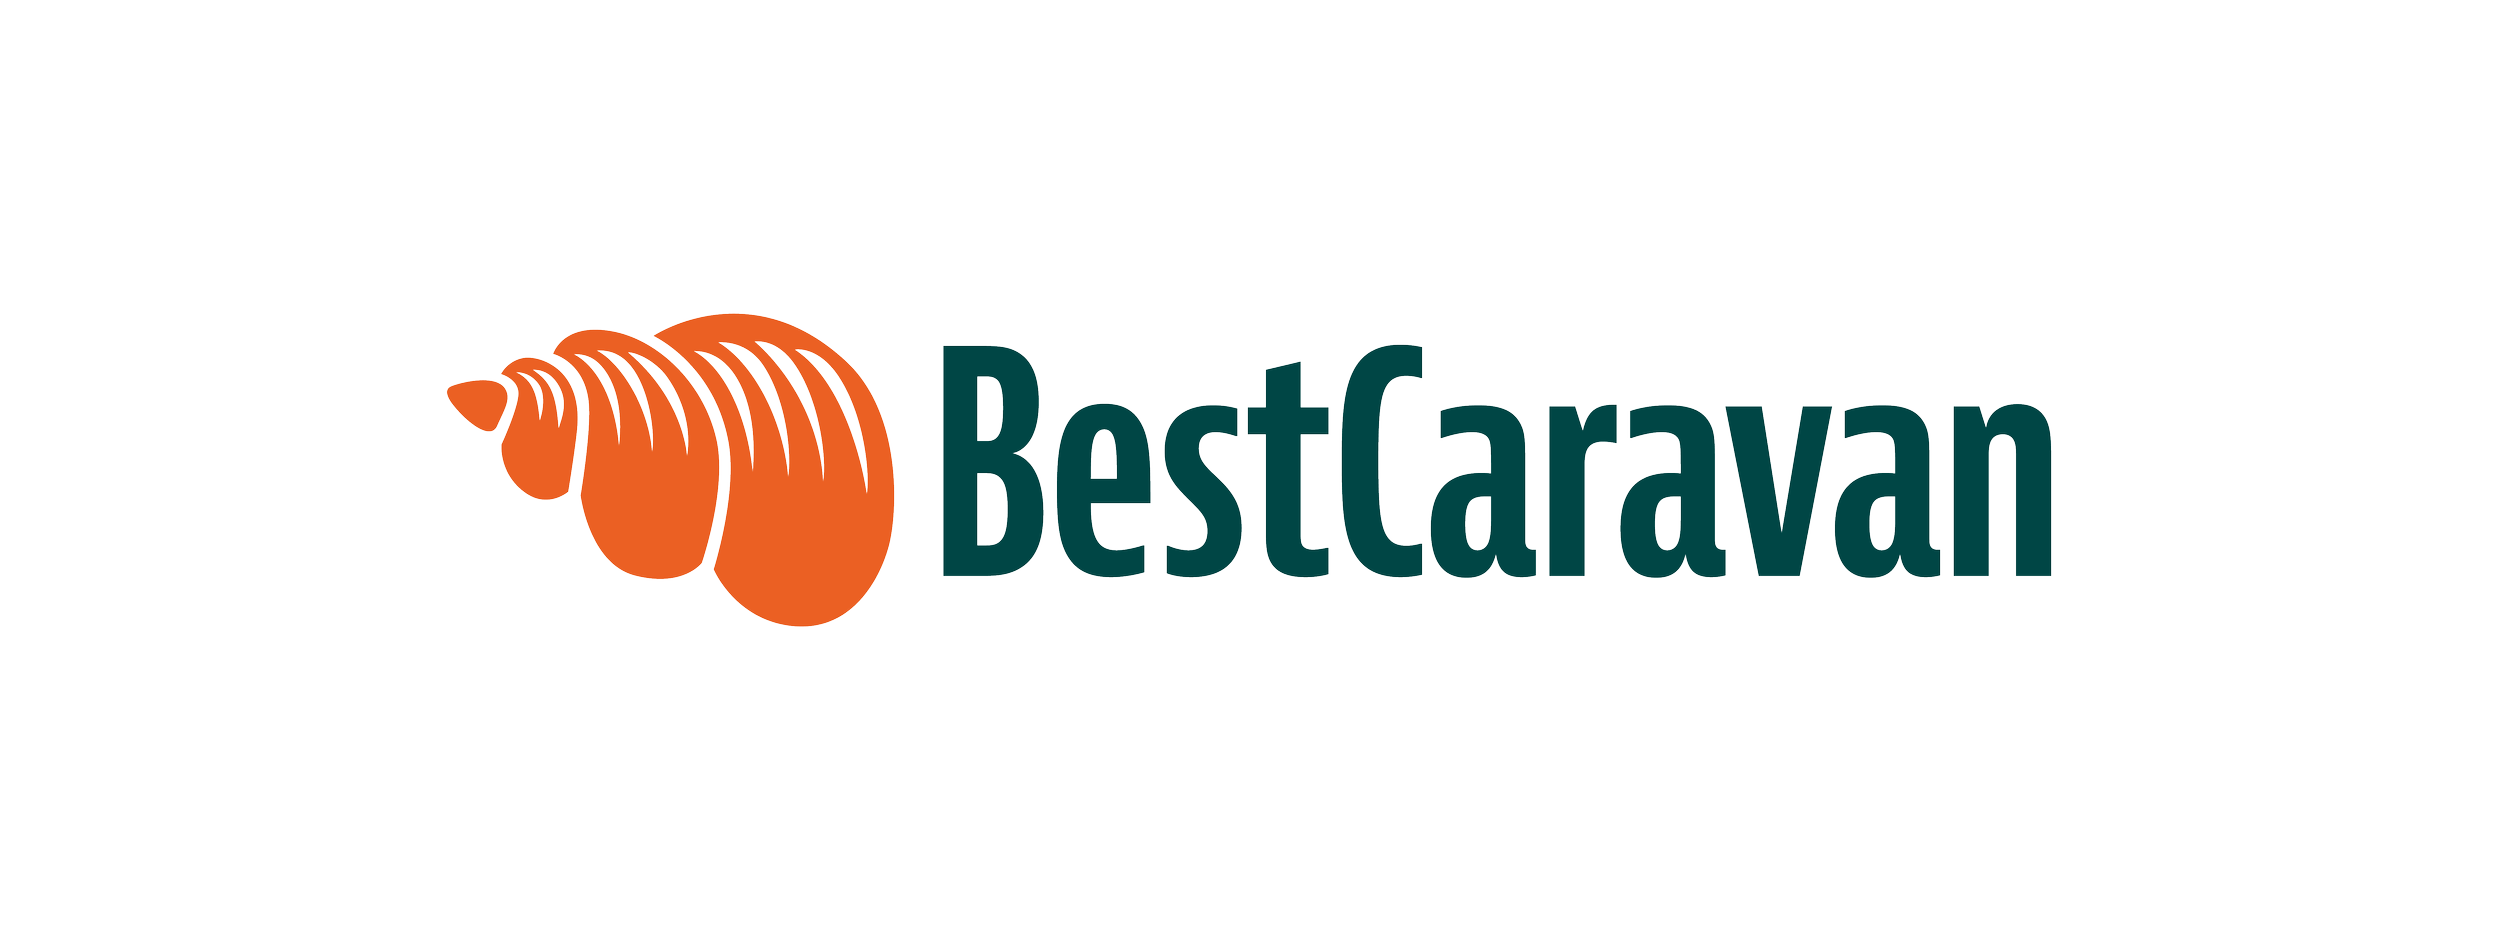 Best_Caravan_logo.png